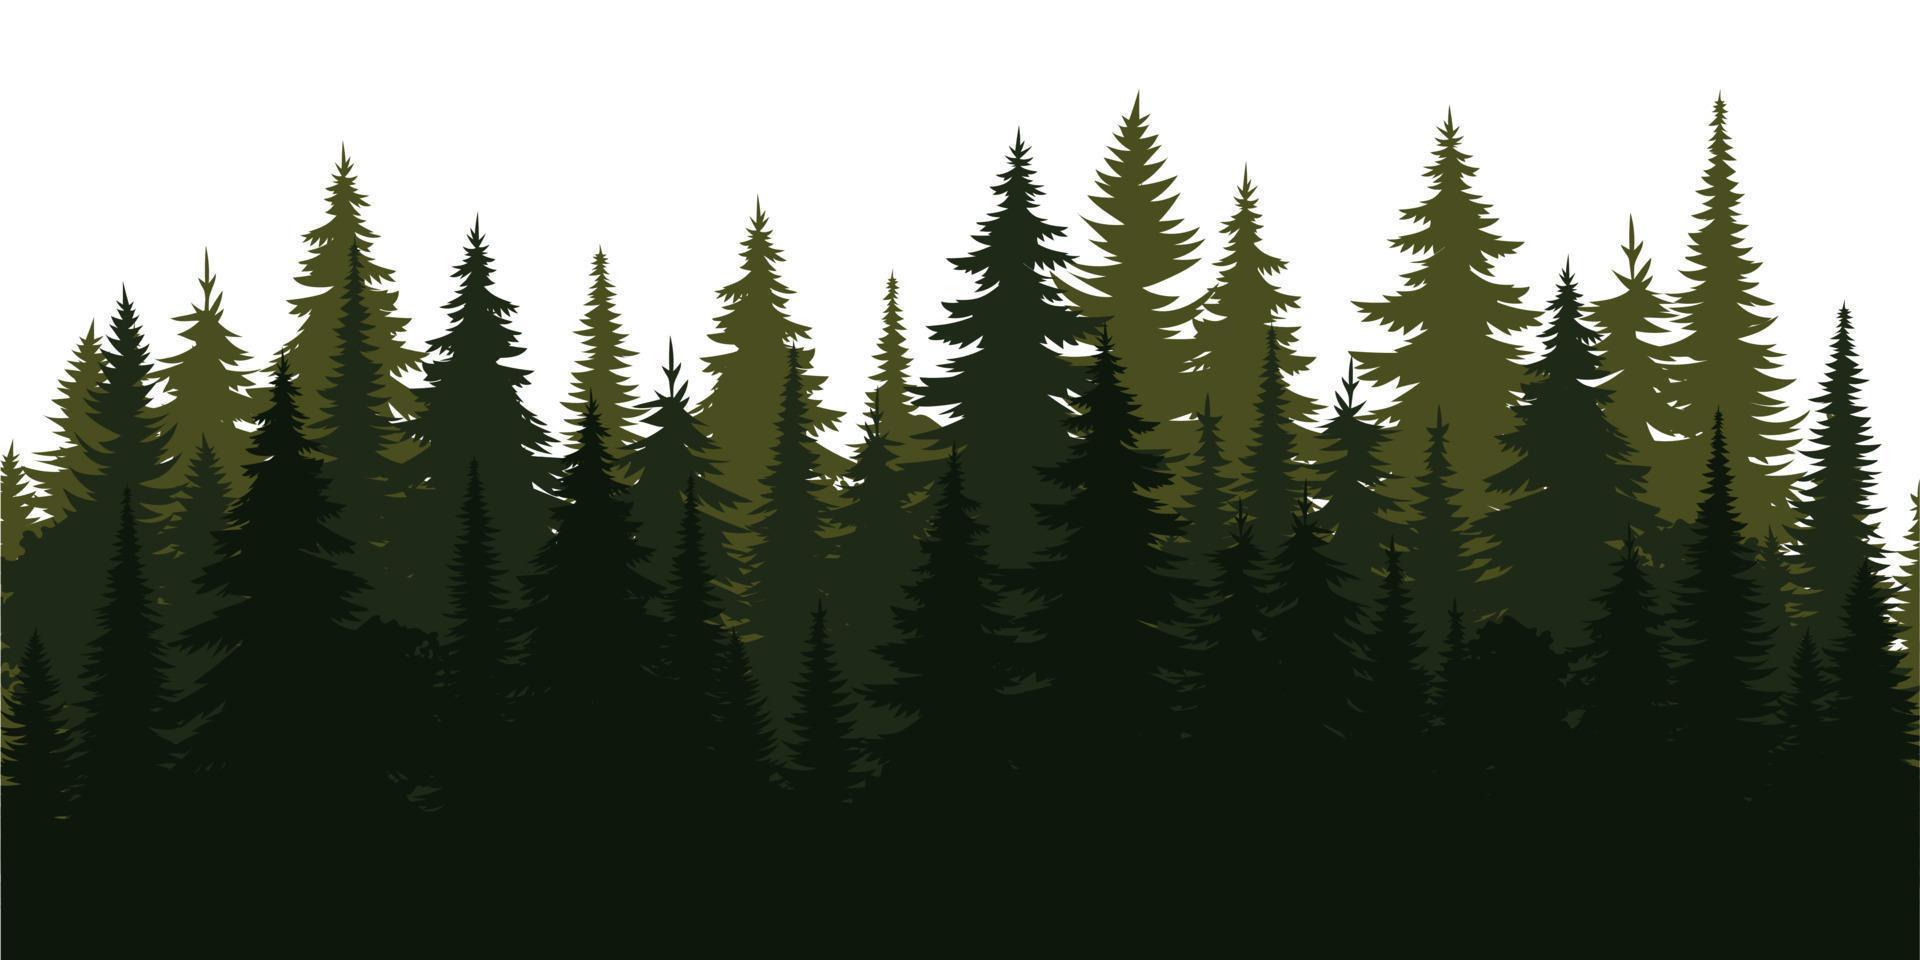 natuur silhouet landschap. lente bos pijnbomen. zomer vectorillustratie. ontwerp winter boom illustratie. vector collectie voor kerst